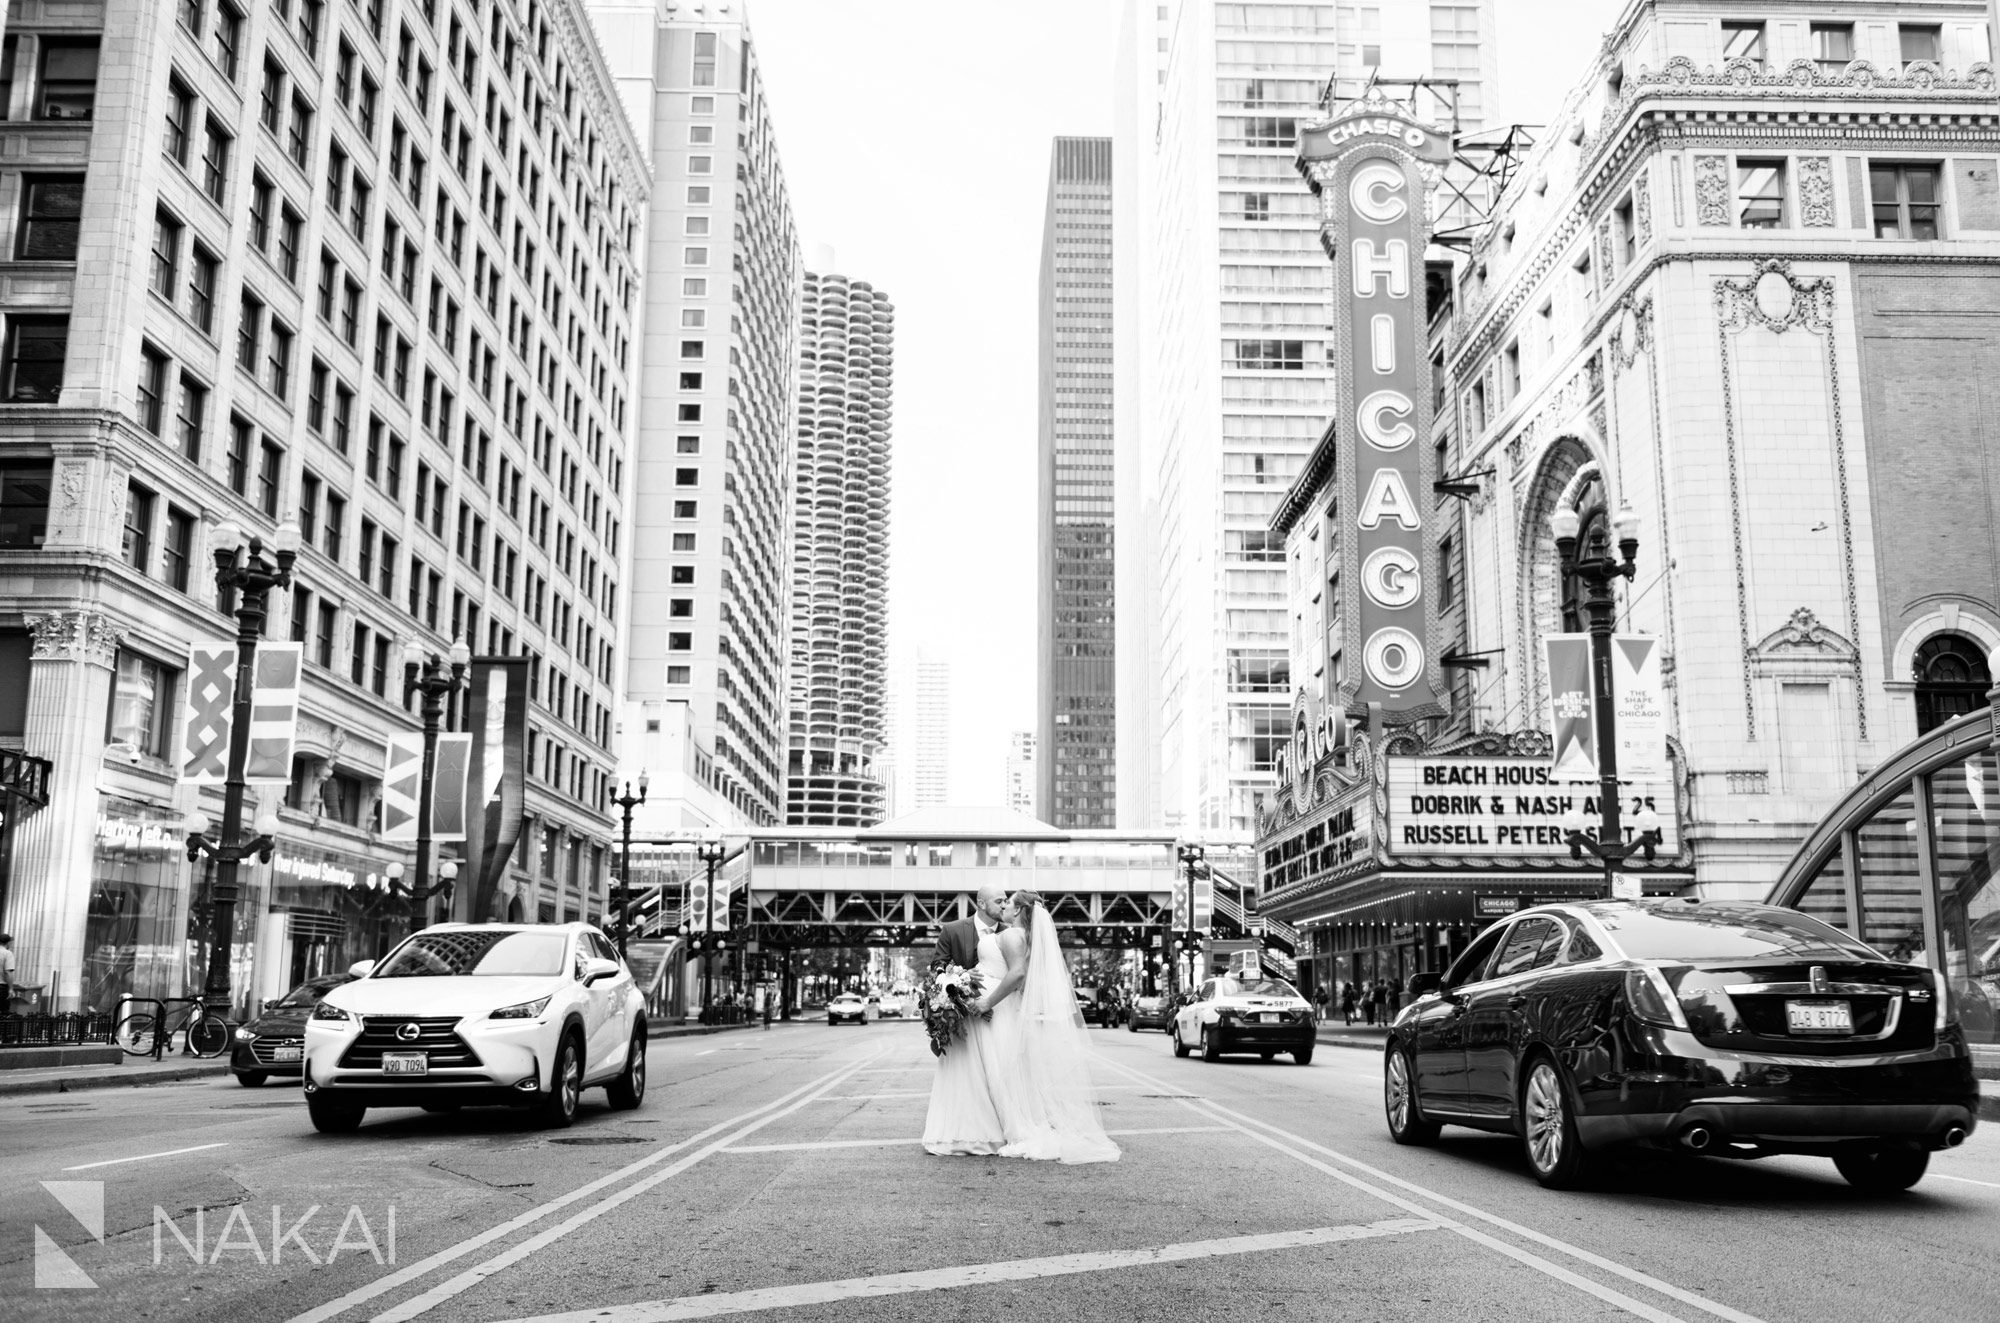 Chicago theatre sign wedding photos bride groom